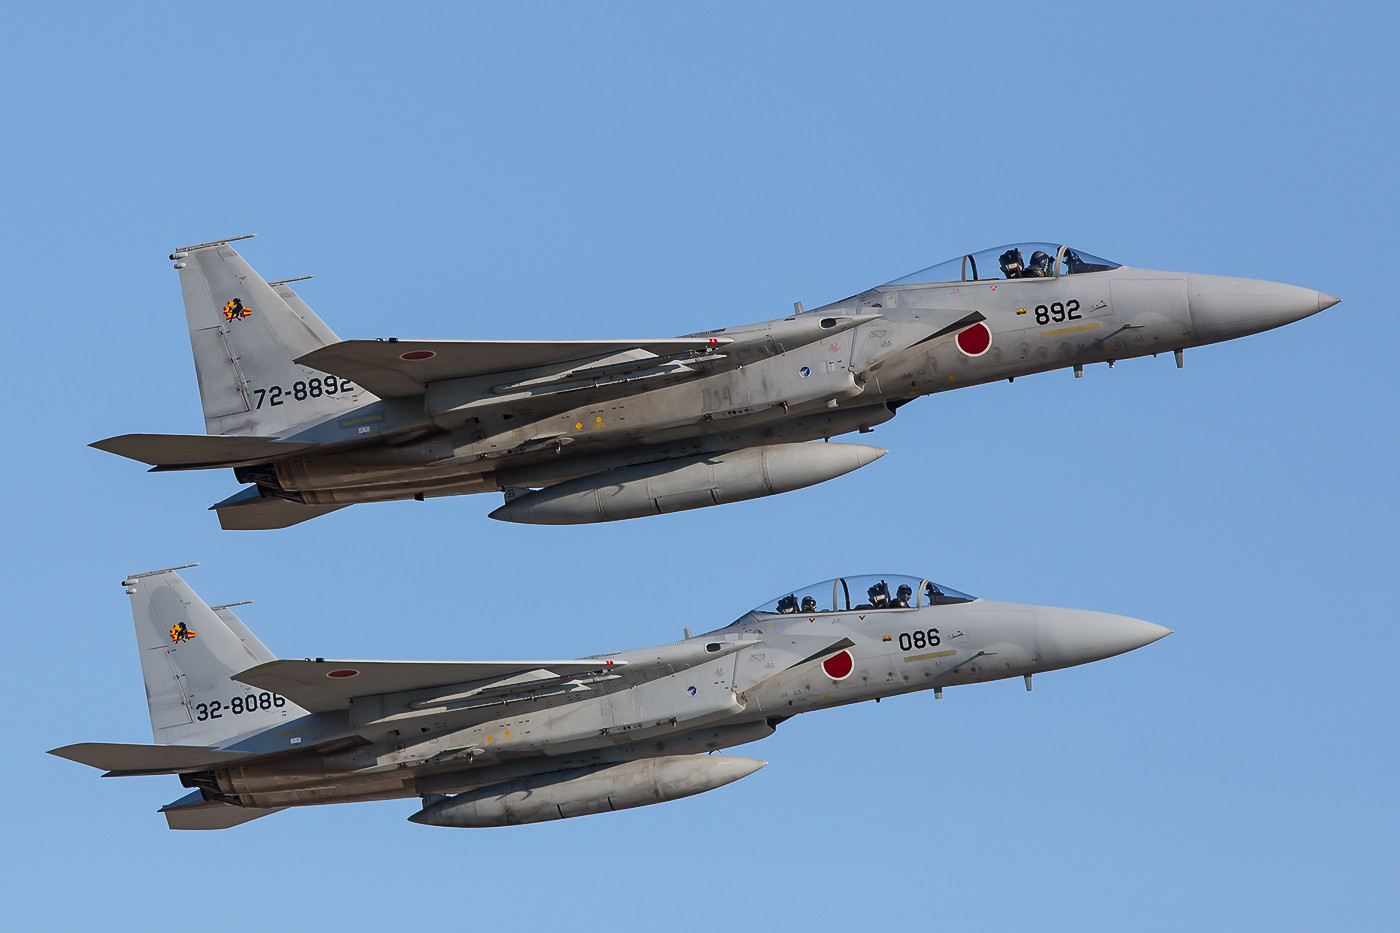 Zwei F-15 der 23 Hikotai, an den Wurzeln der Trafgflächen erkennt man die Verstärkungsplatten, die bei den Amerikaner fehlen.